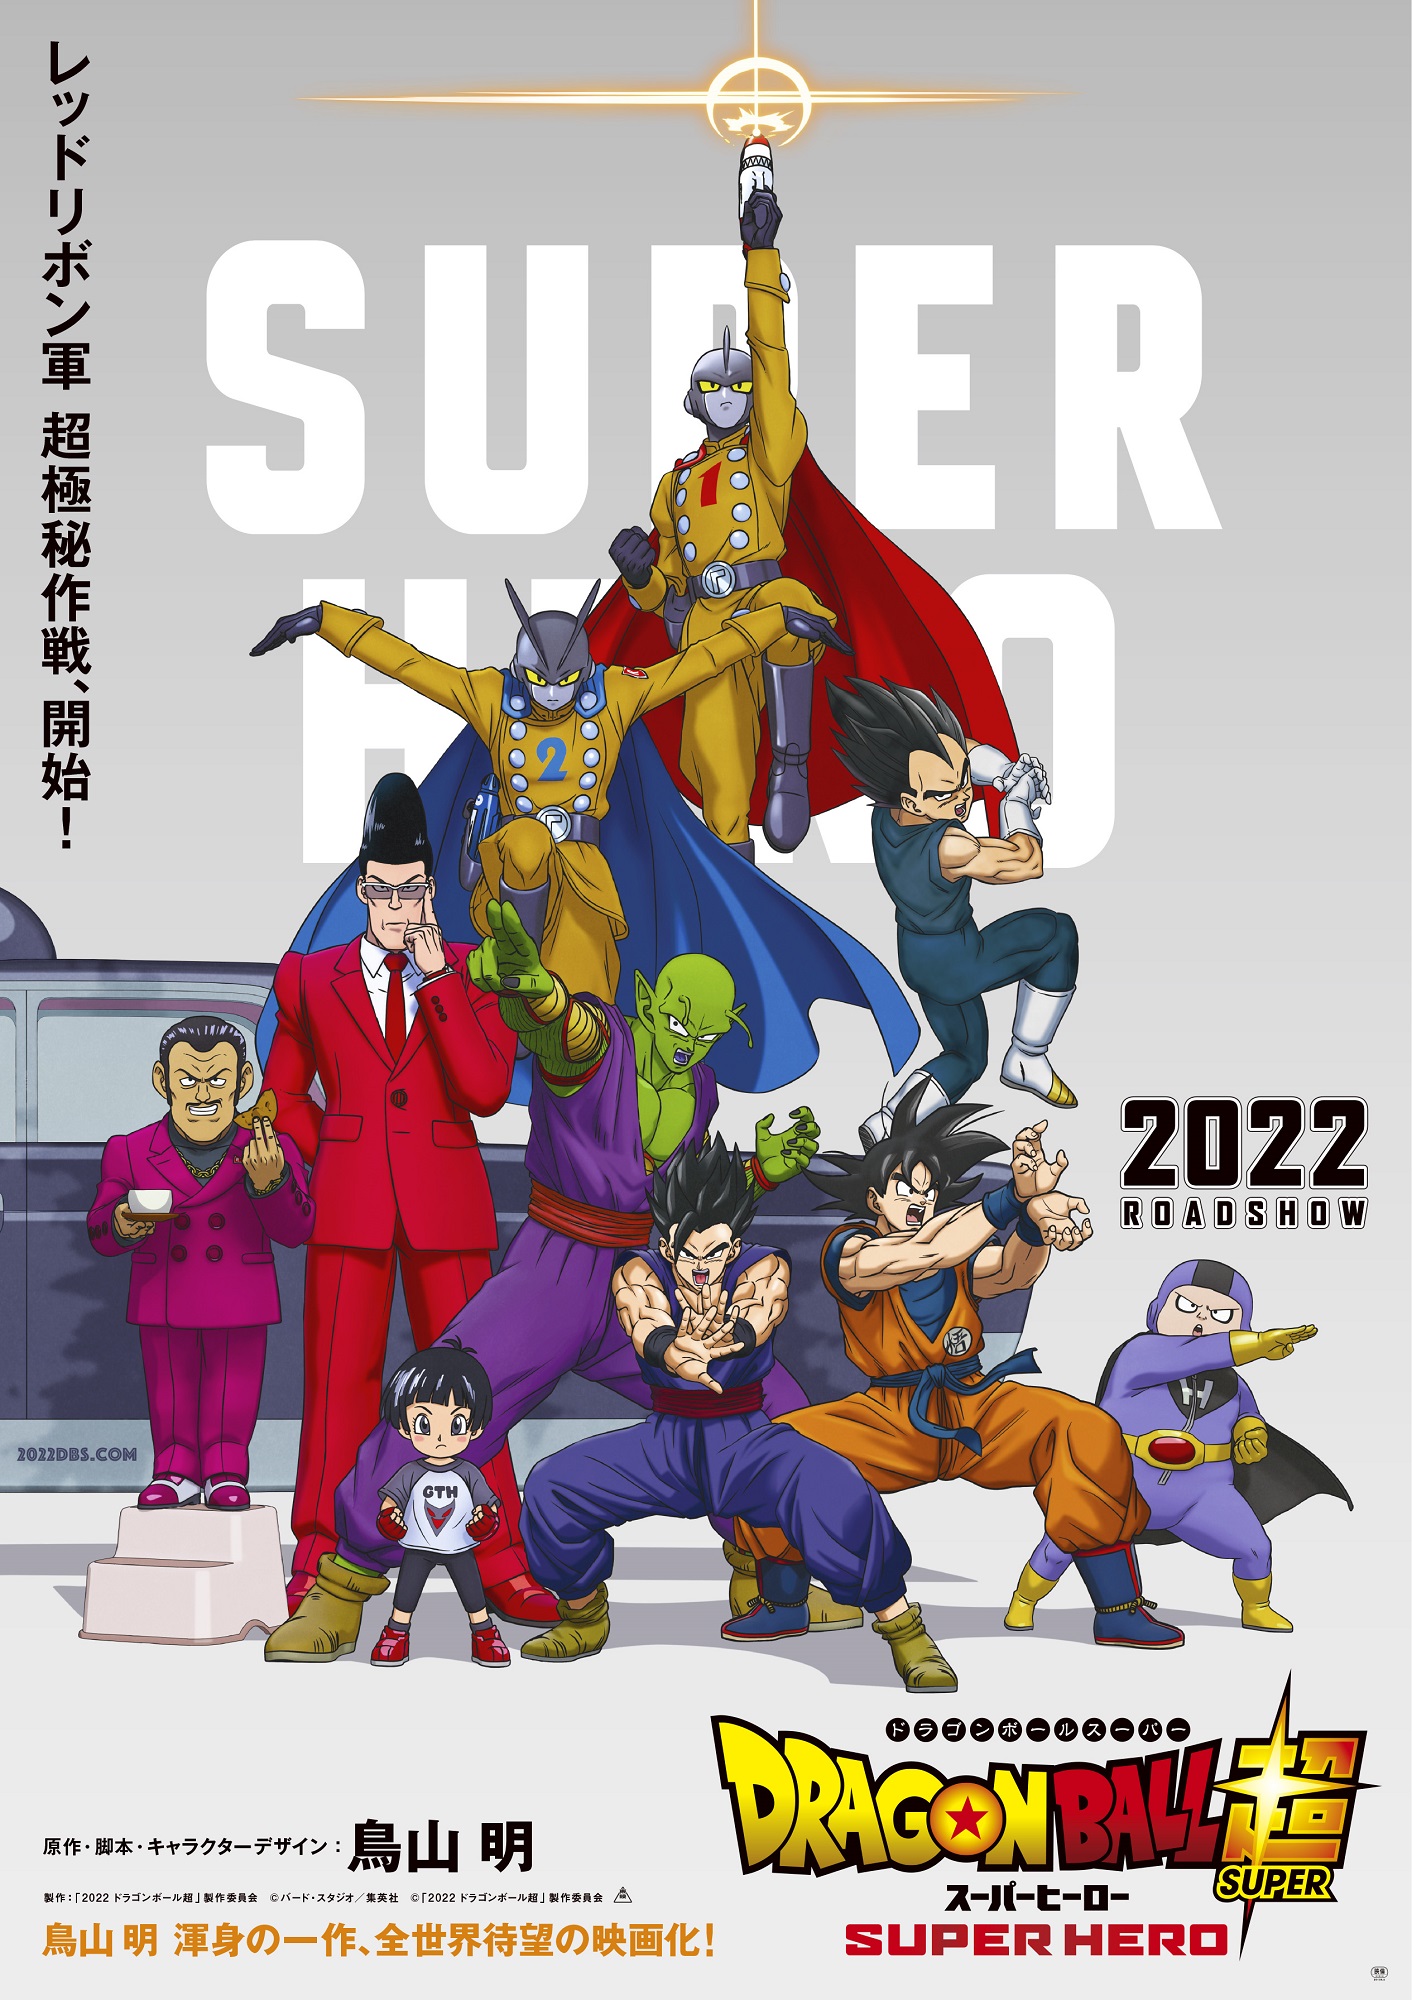 映画「ドラゴンボール超 スーパーヒーロー」の公開日が2022年4月22日に